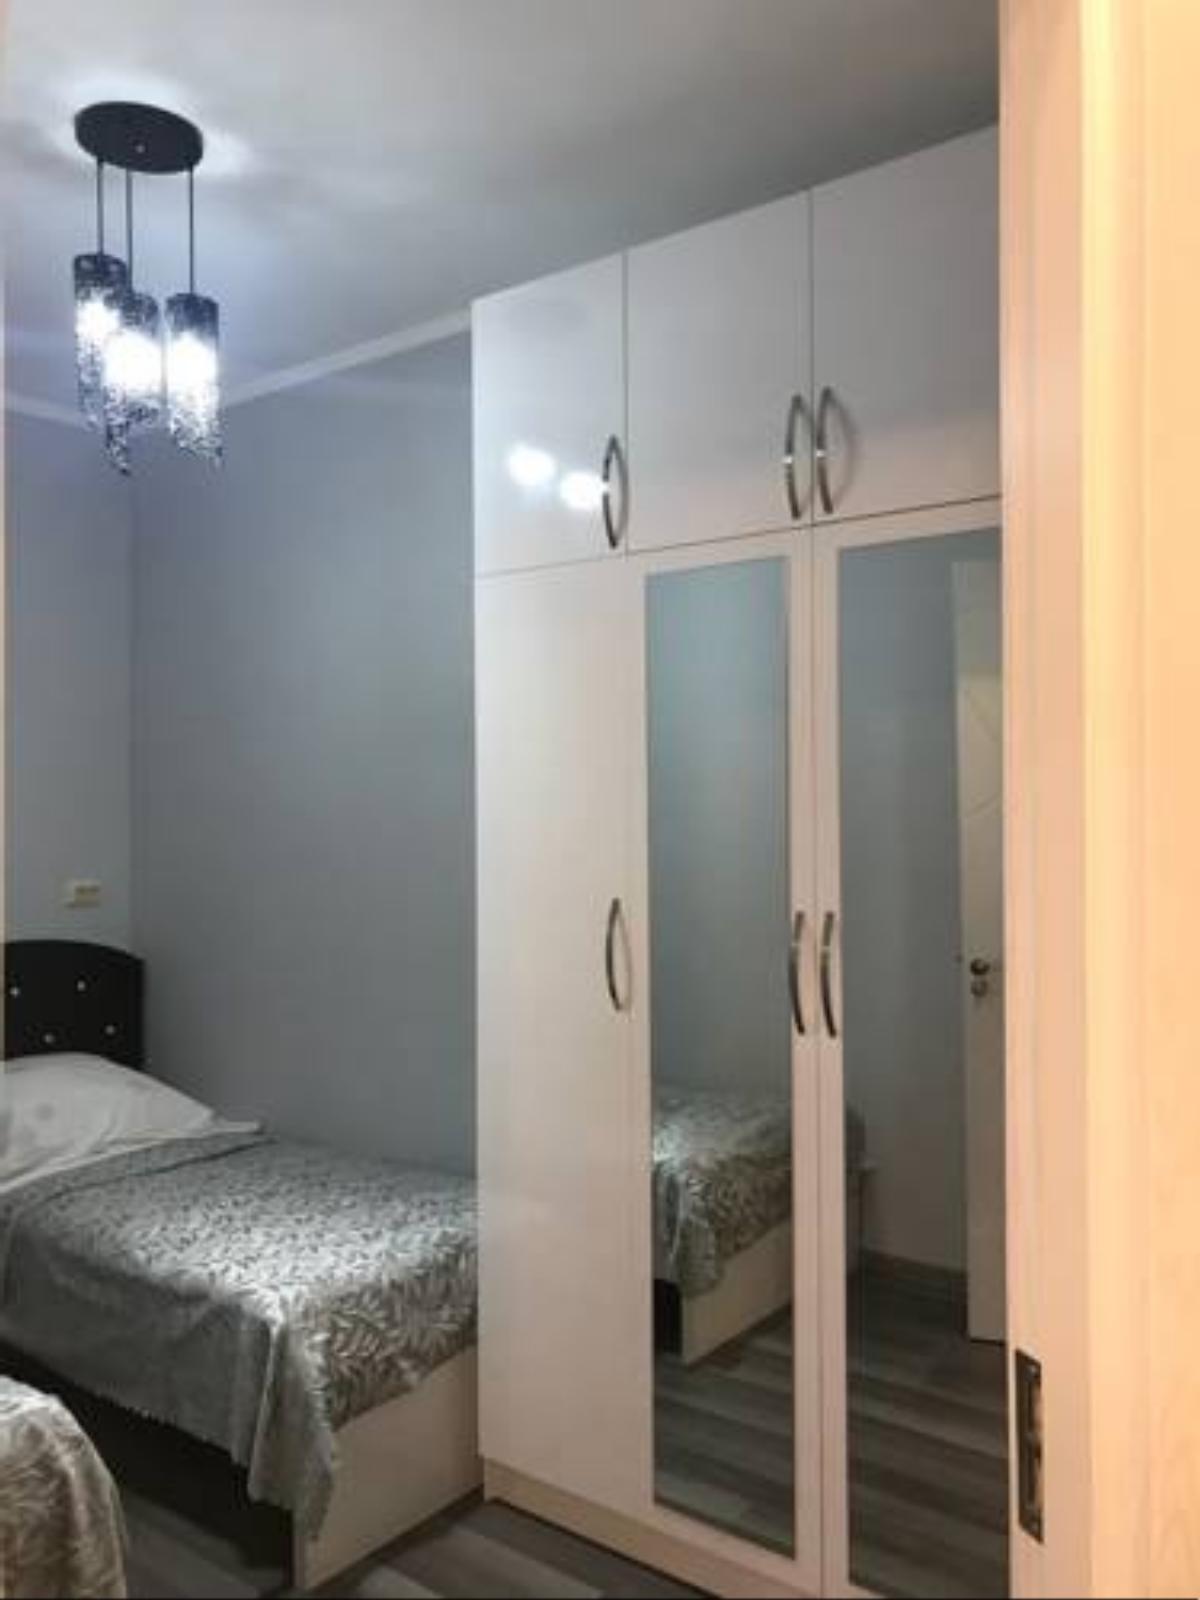 New repaired apartment in batumi Hotel Batumi Georgia